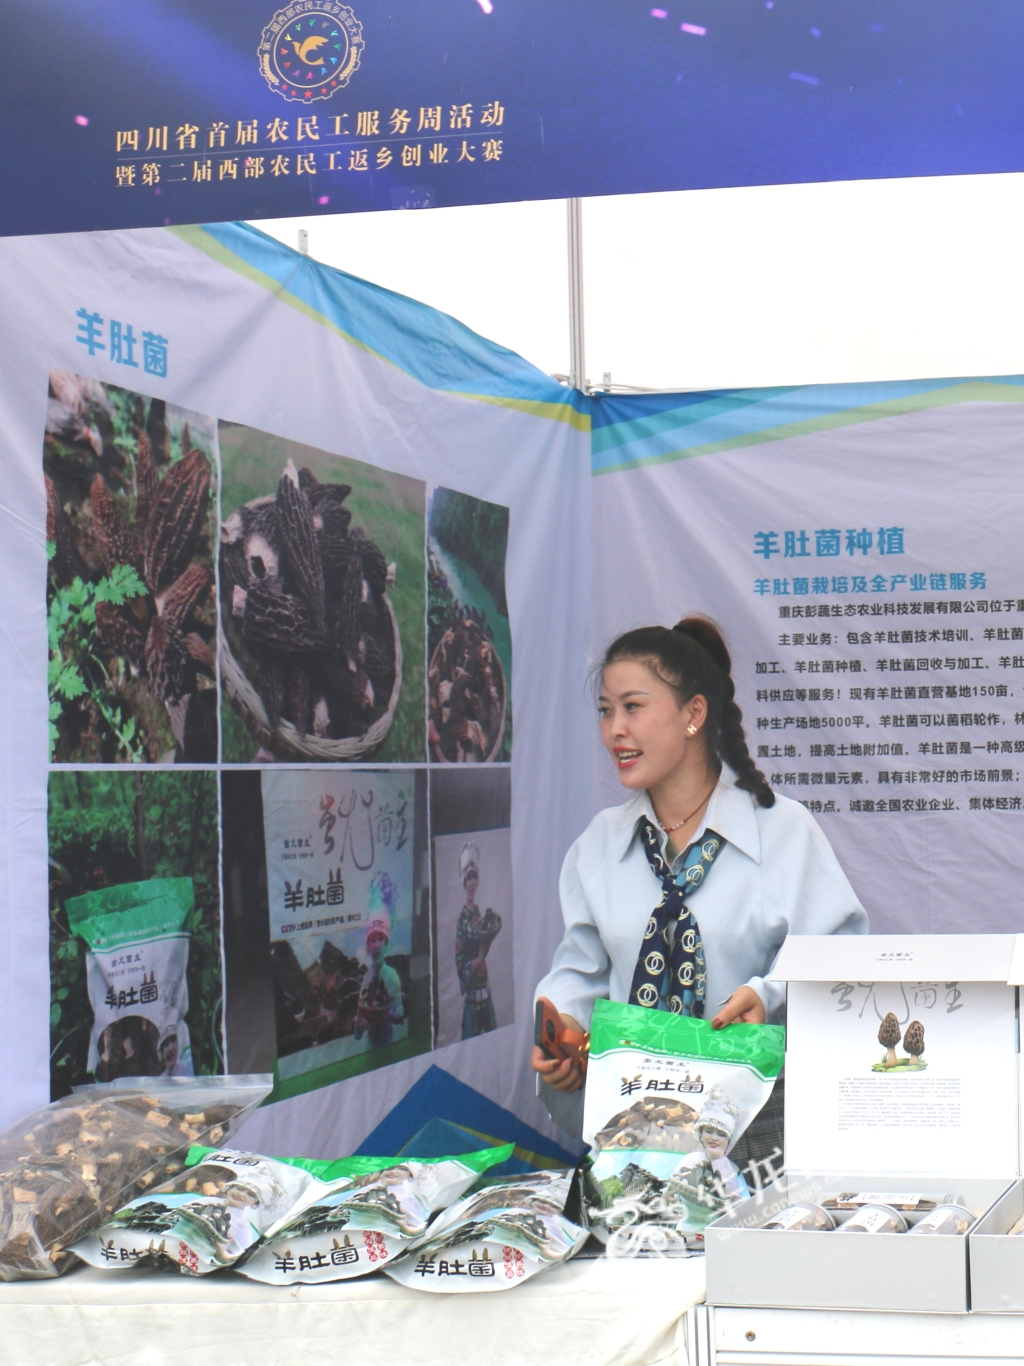 来自重庆彭水的农民工代表张春容展示自己羊肚菌的产品。华龙网-新重庆客户端 赵颖竹 摄